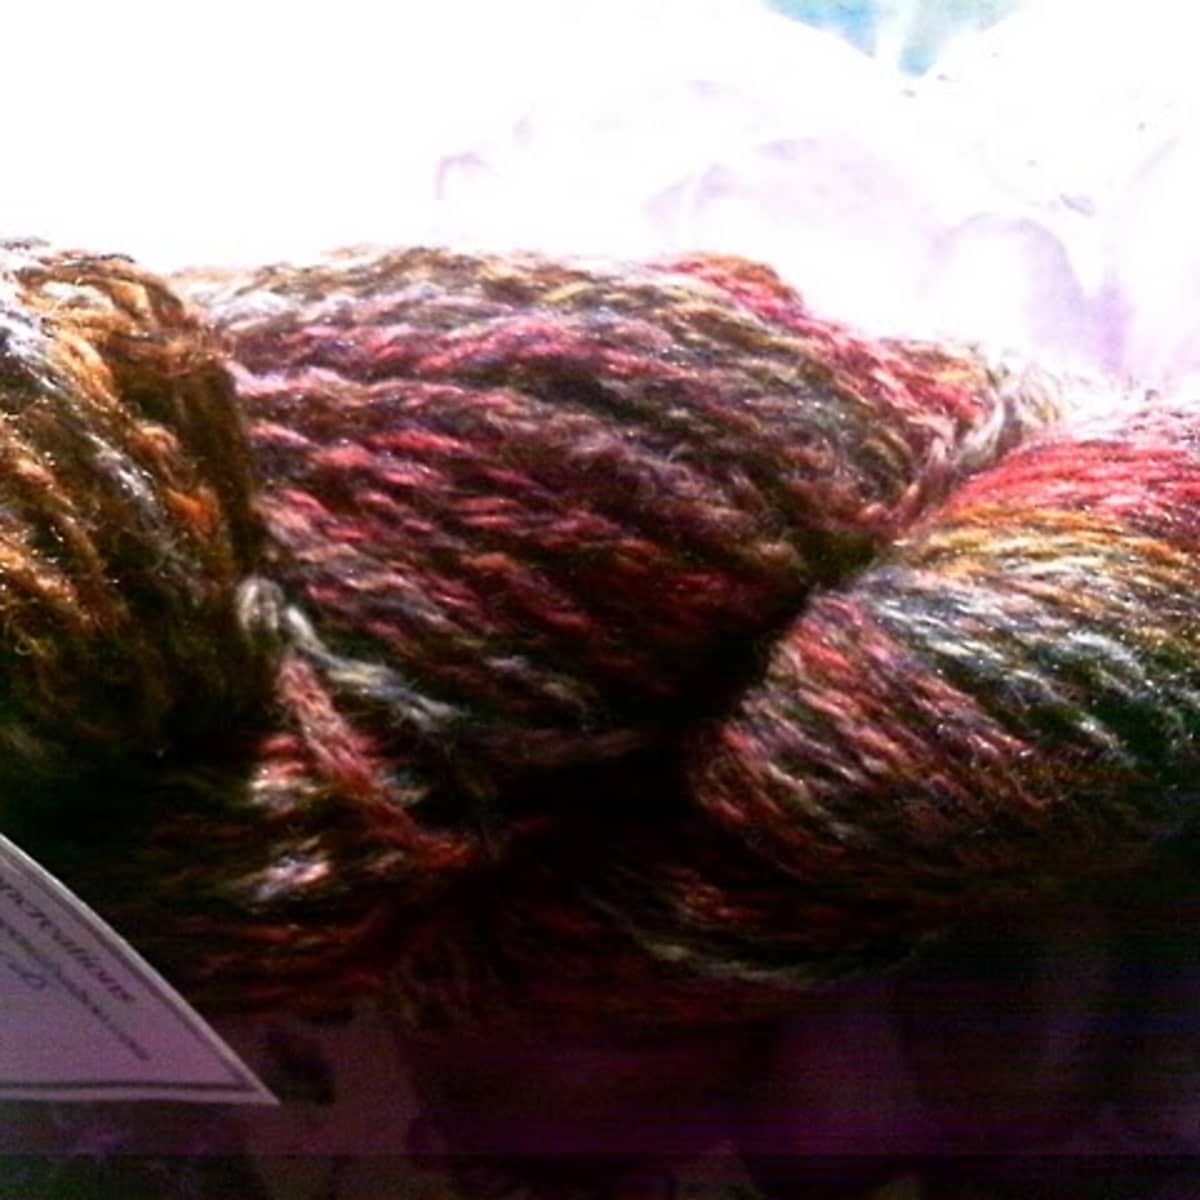 Dyeing Wool Yarn - Kool Aid and Rit Dye Methods